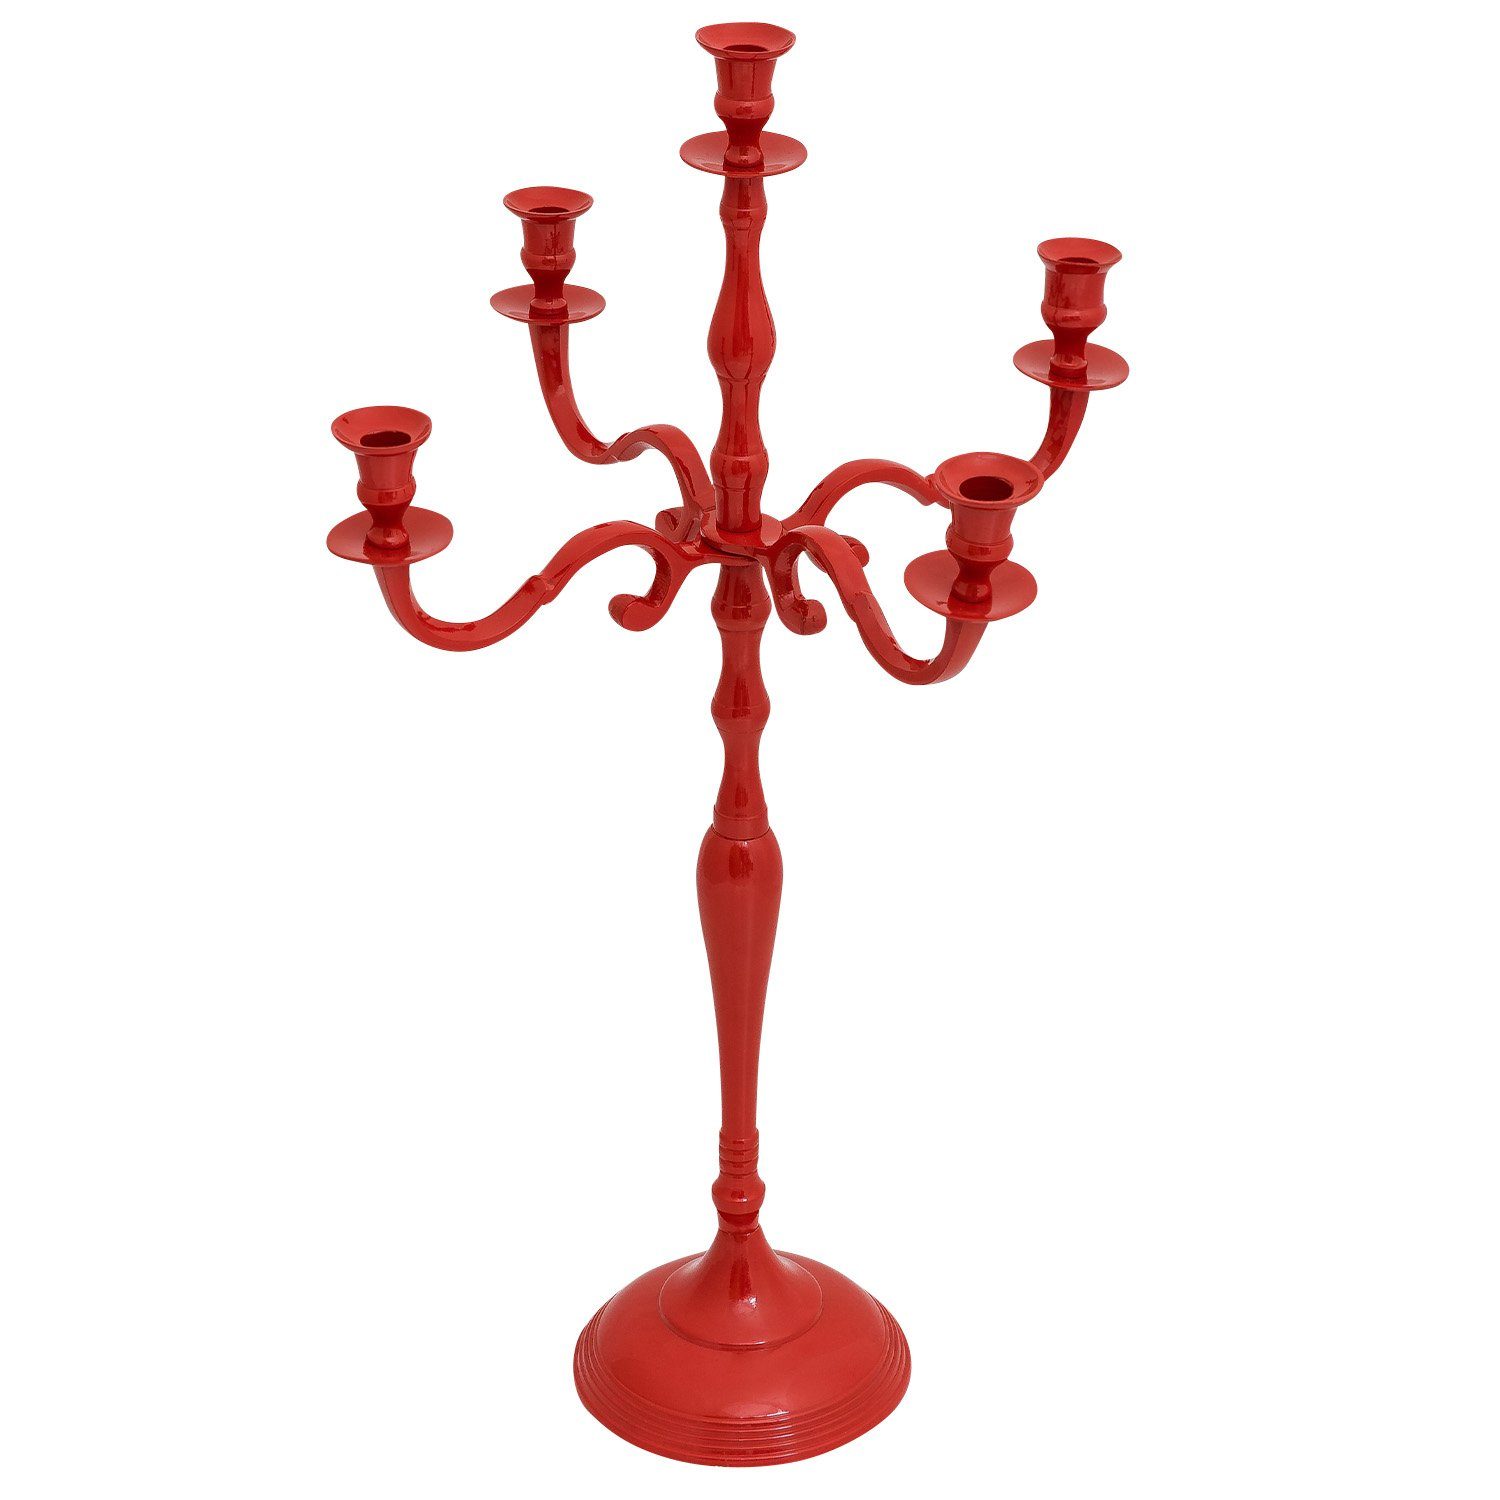 Aubaho Kerzenständer Aluminium Kerzenständer 78cm Kerzenhalter Antik-Stil rot 5-armig